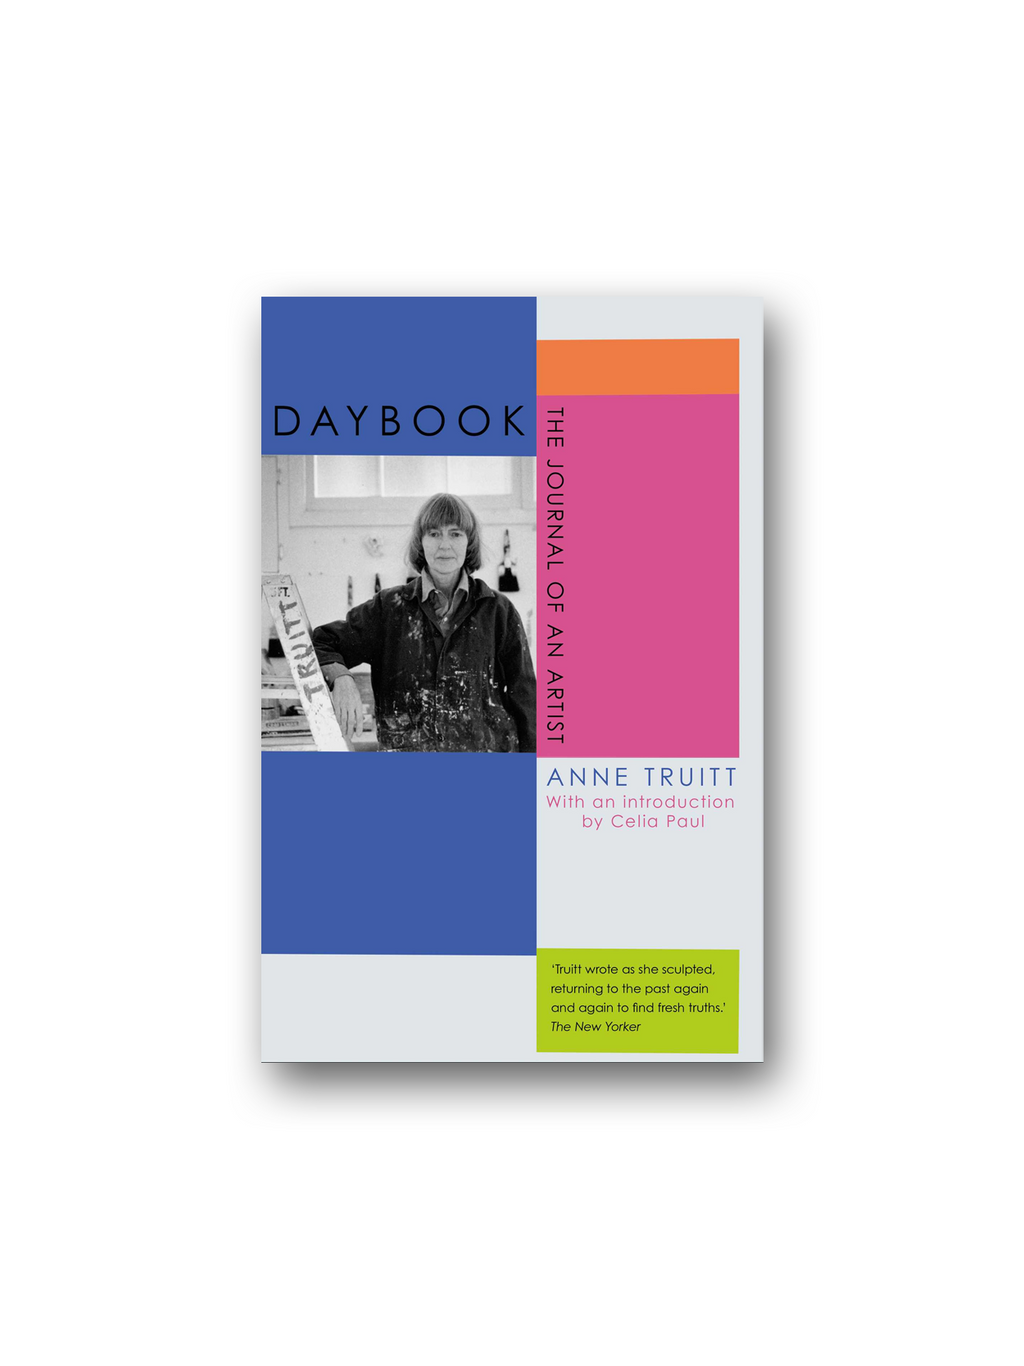 Daybook: The Journal of an Artist